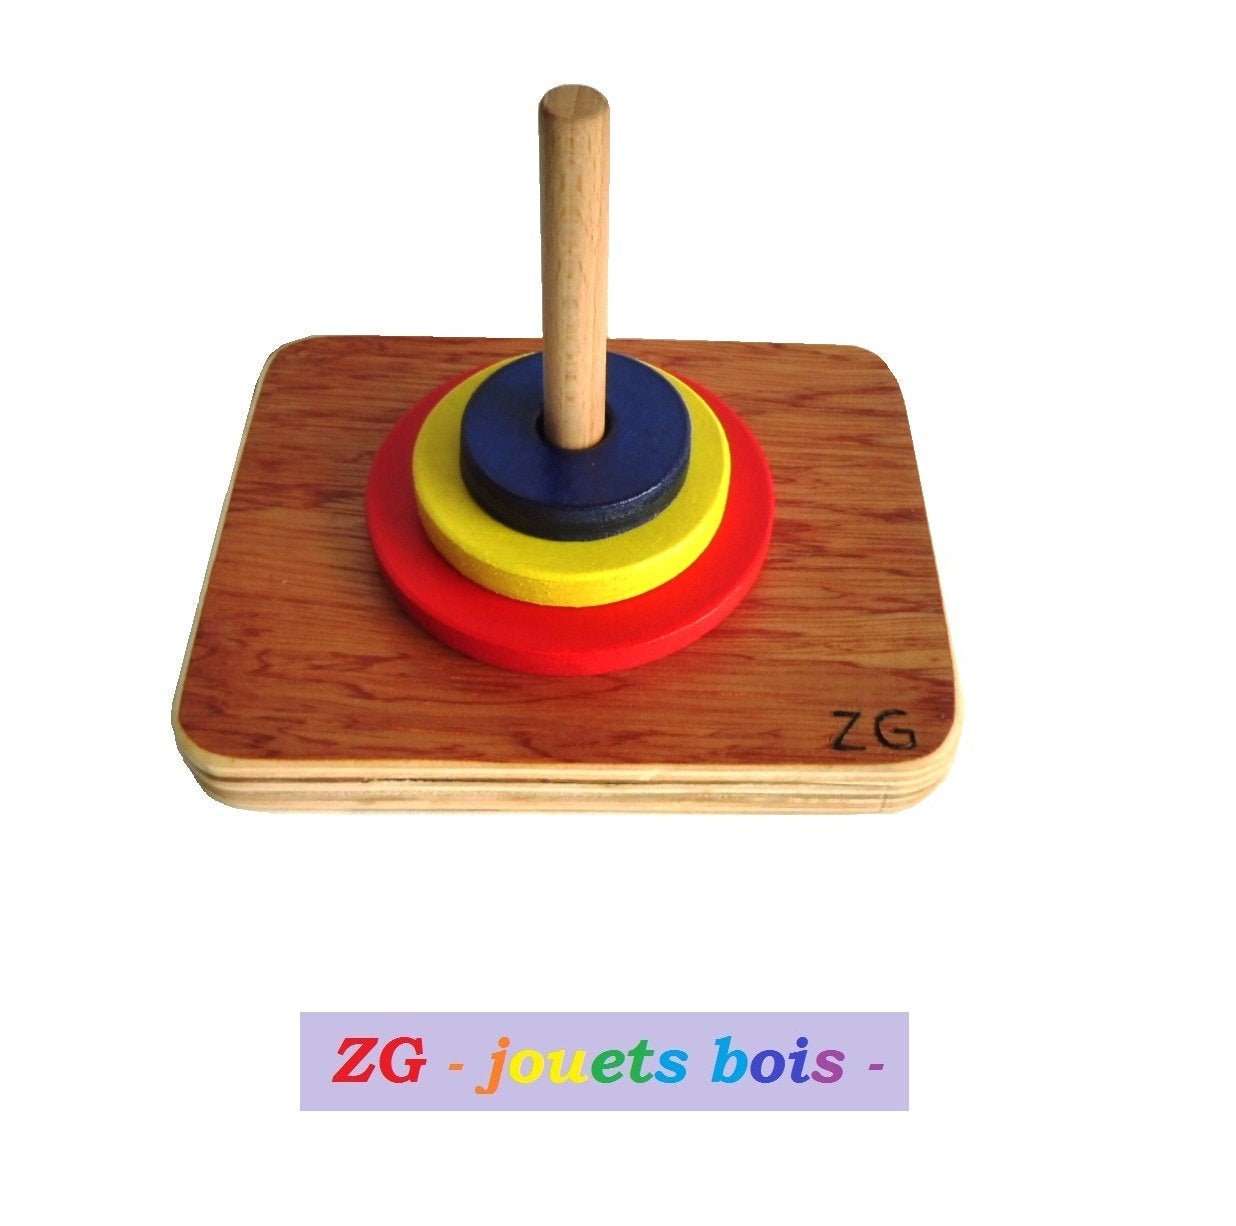 Planche d'équilibre - Matériel Montessori - Nido Montessori - jeux éducatif  éveil bébé